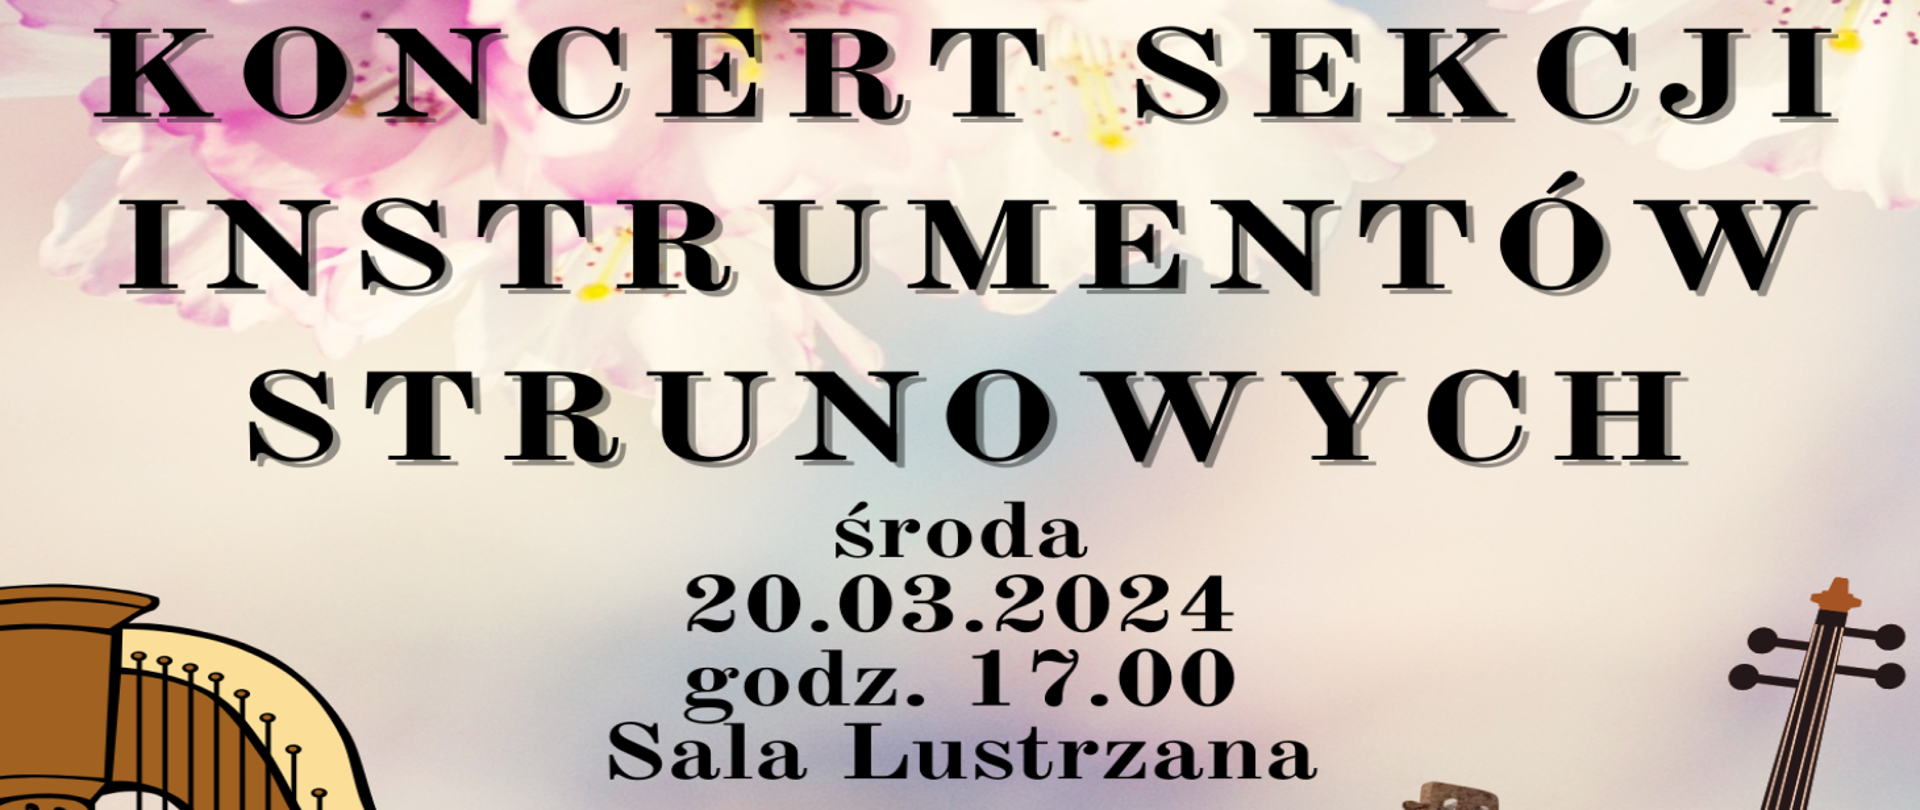 Baner zawiera opis wydarzenia - wycinek plakatu z kolorowymi kwiatami - zapowiadający koncert Sekcji Instrumentów Strunowych, 20.03.2024, o godzinie 17 w Sali Lustrzanej.
